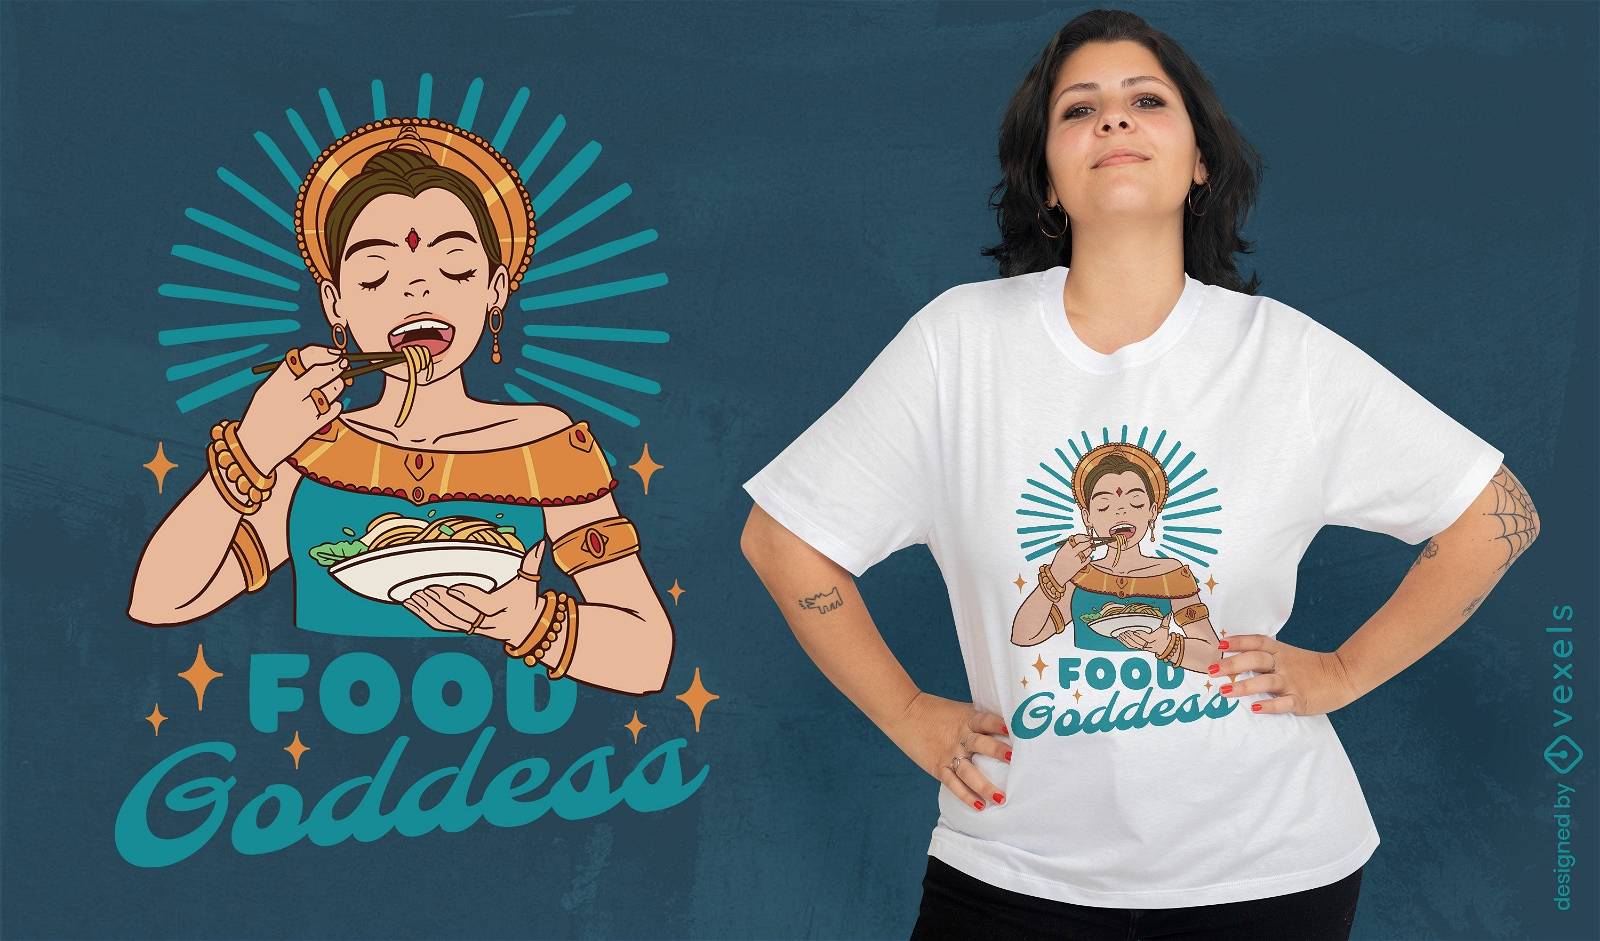 Apsara girl food quote t-shirt design